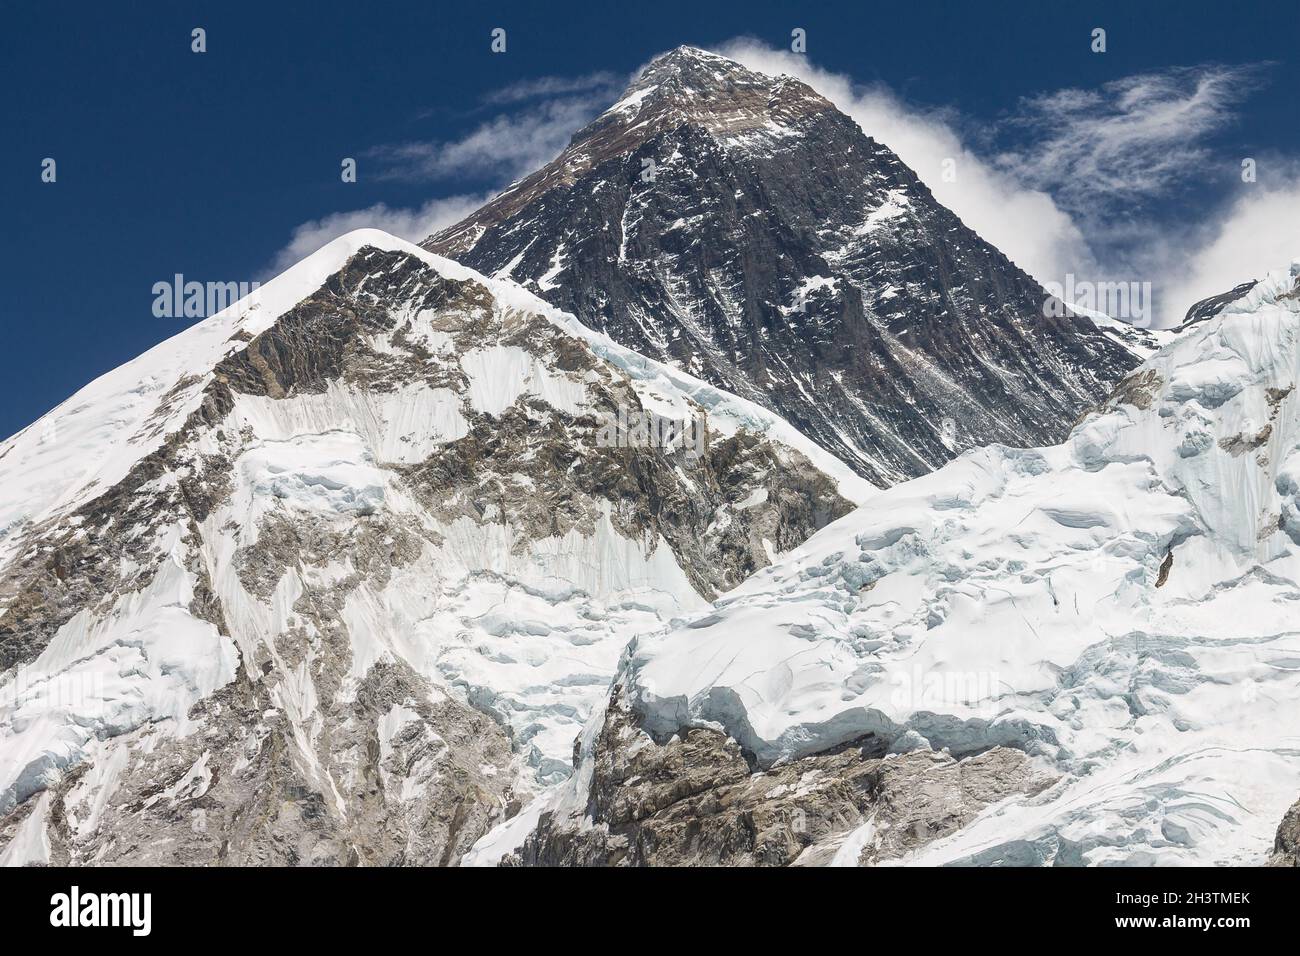 Mt. Everest seen from the Kala Patthar peak Stock Photo